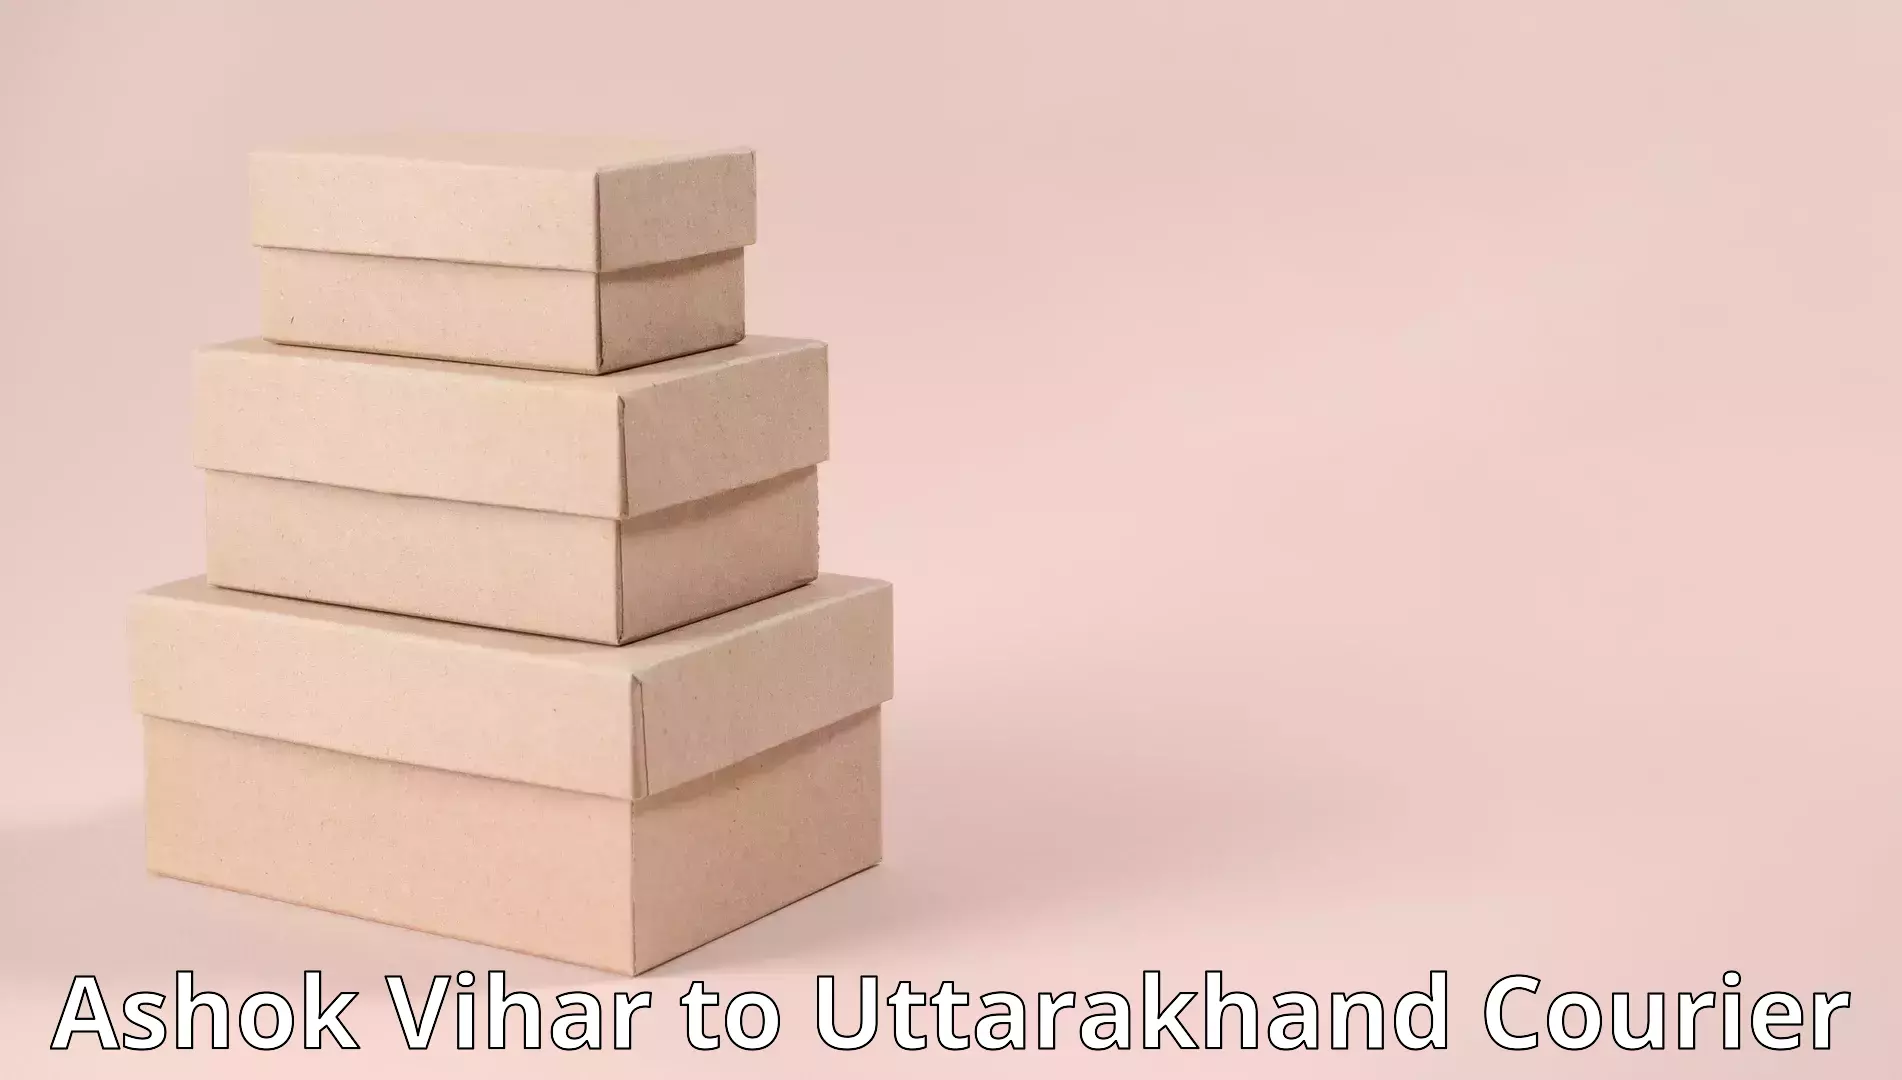 Professional furniture movers Ashok Vihar to Uttarkashi